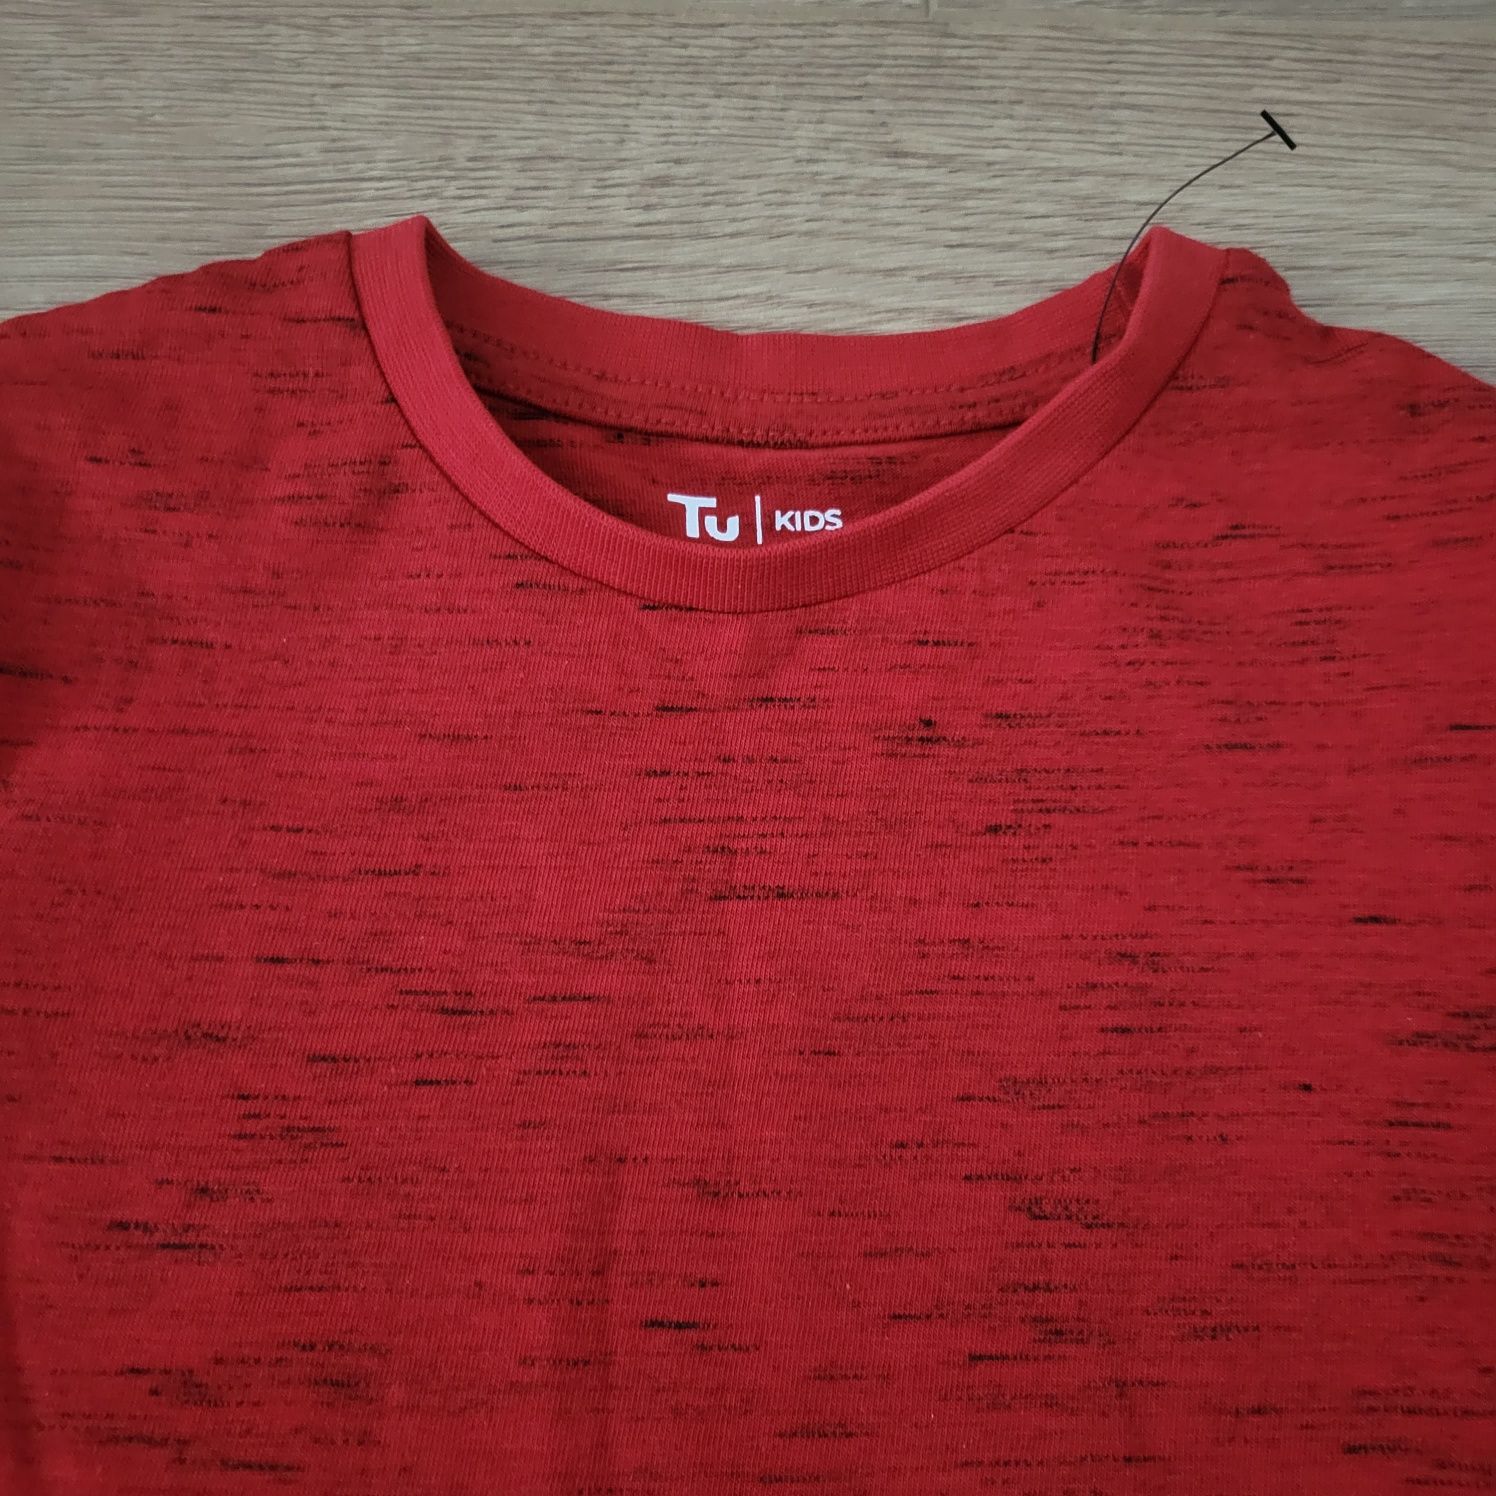 Nowa bluzka czerwona r.110/116 TU Kids, unisex